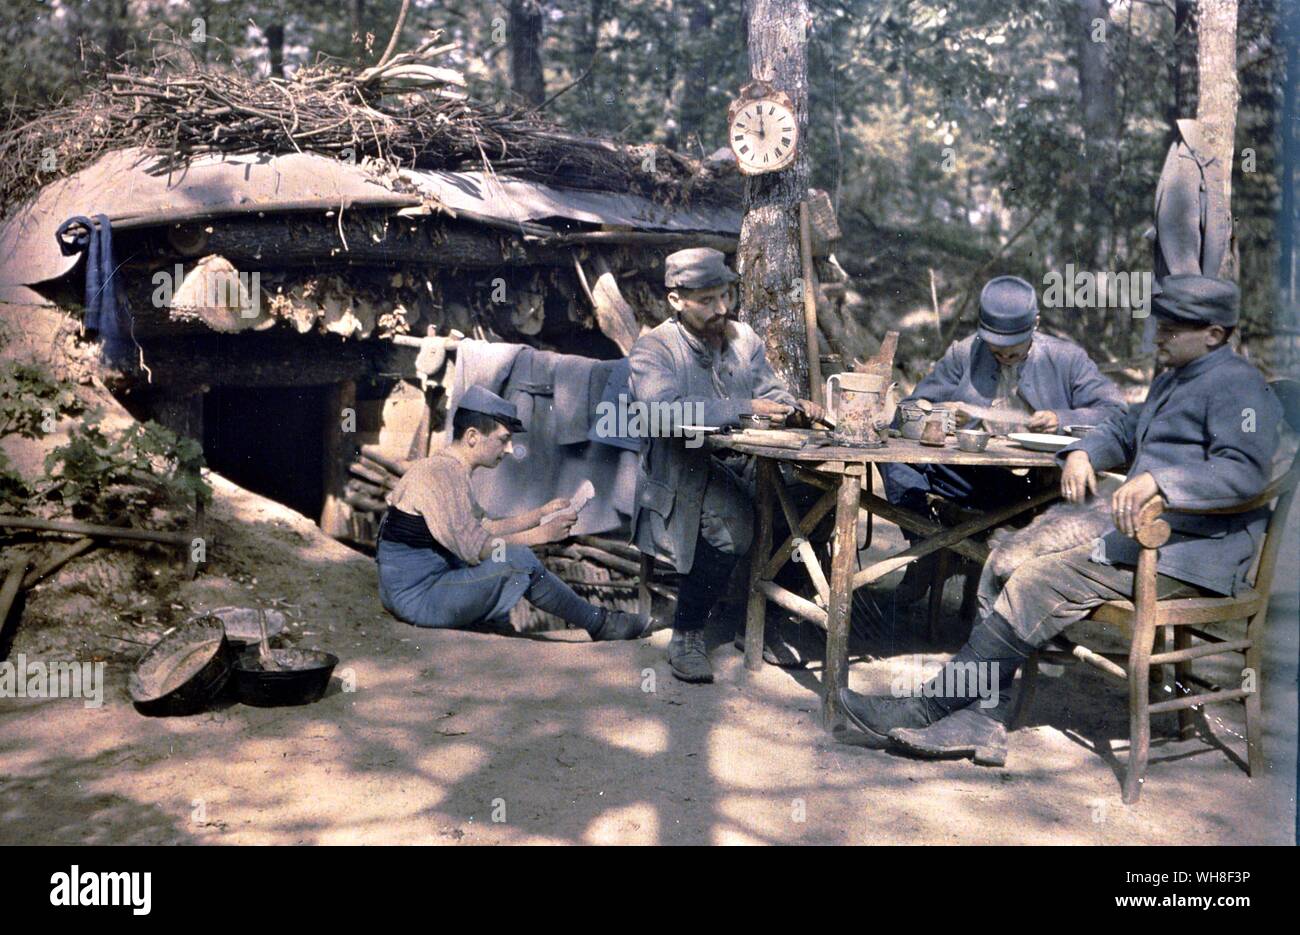 Weltkrieg ein. Französische Infanterie in der Somme Ivry, Frankreich. Einer der ersten Farbe Fotos gemacht. Der Große Krieg von Correlli Barnett. Stockfoto